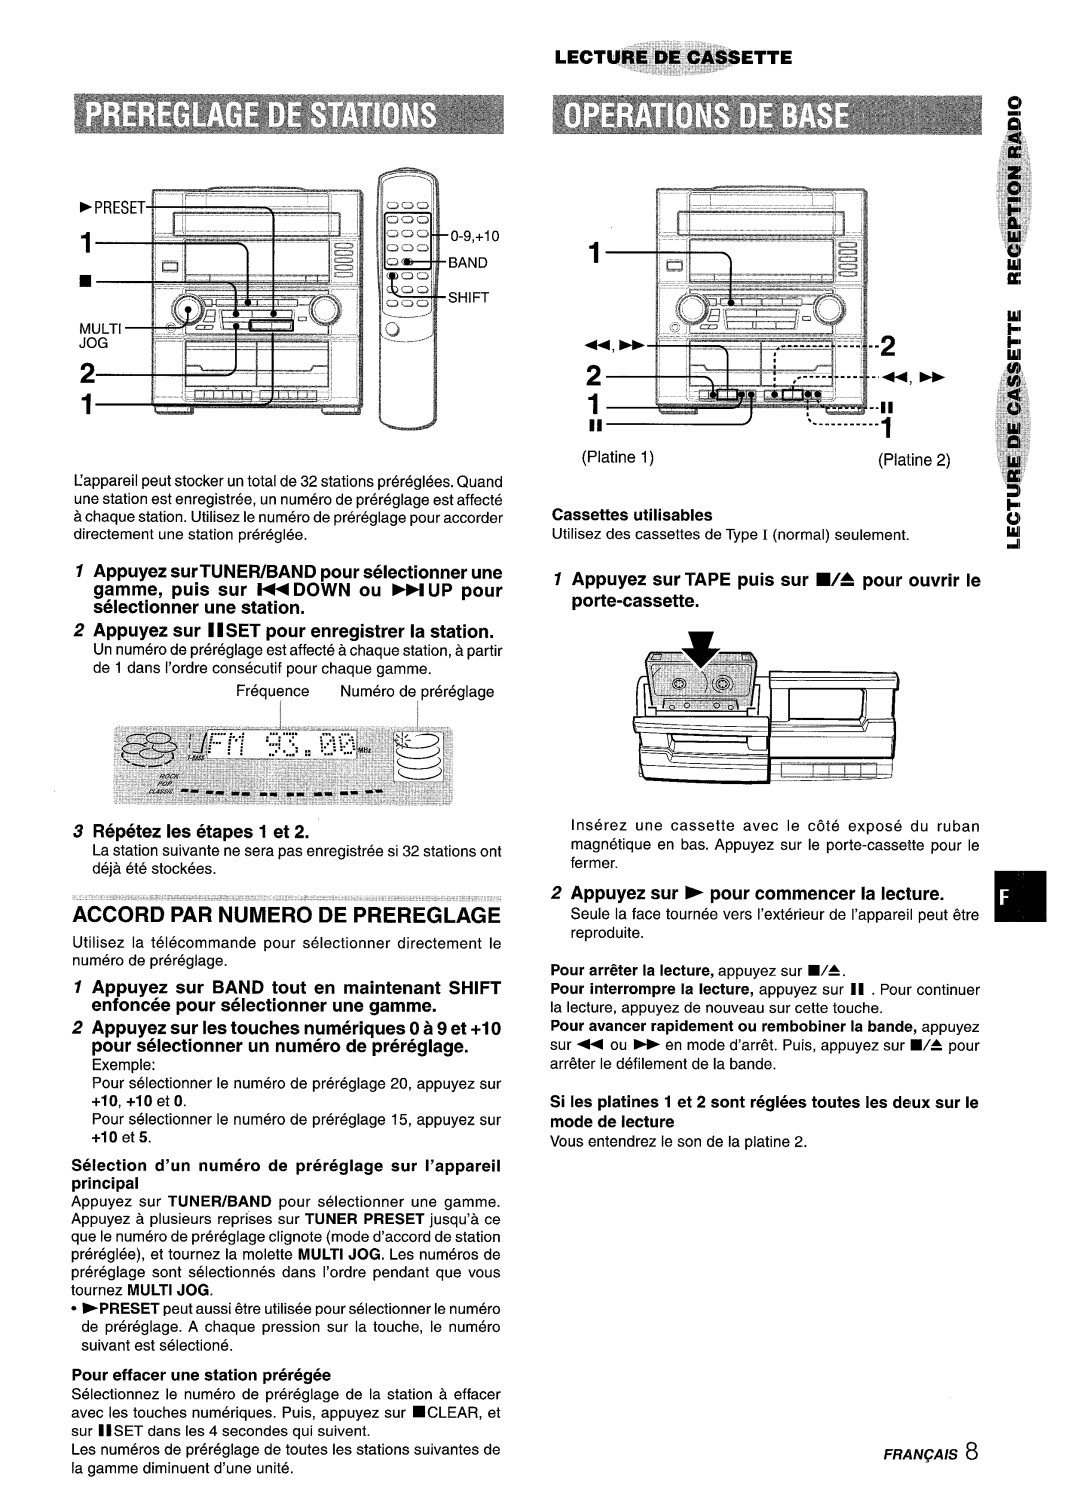 Aiwa Z-R555 manual Accord Par Numero De Prereglage, Appuyez sur II SET pour enregistrer la station, Repetez Ies etapes 1 et 